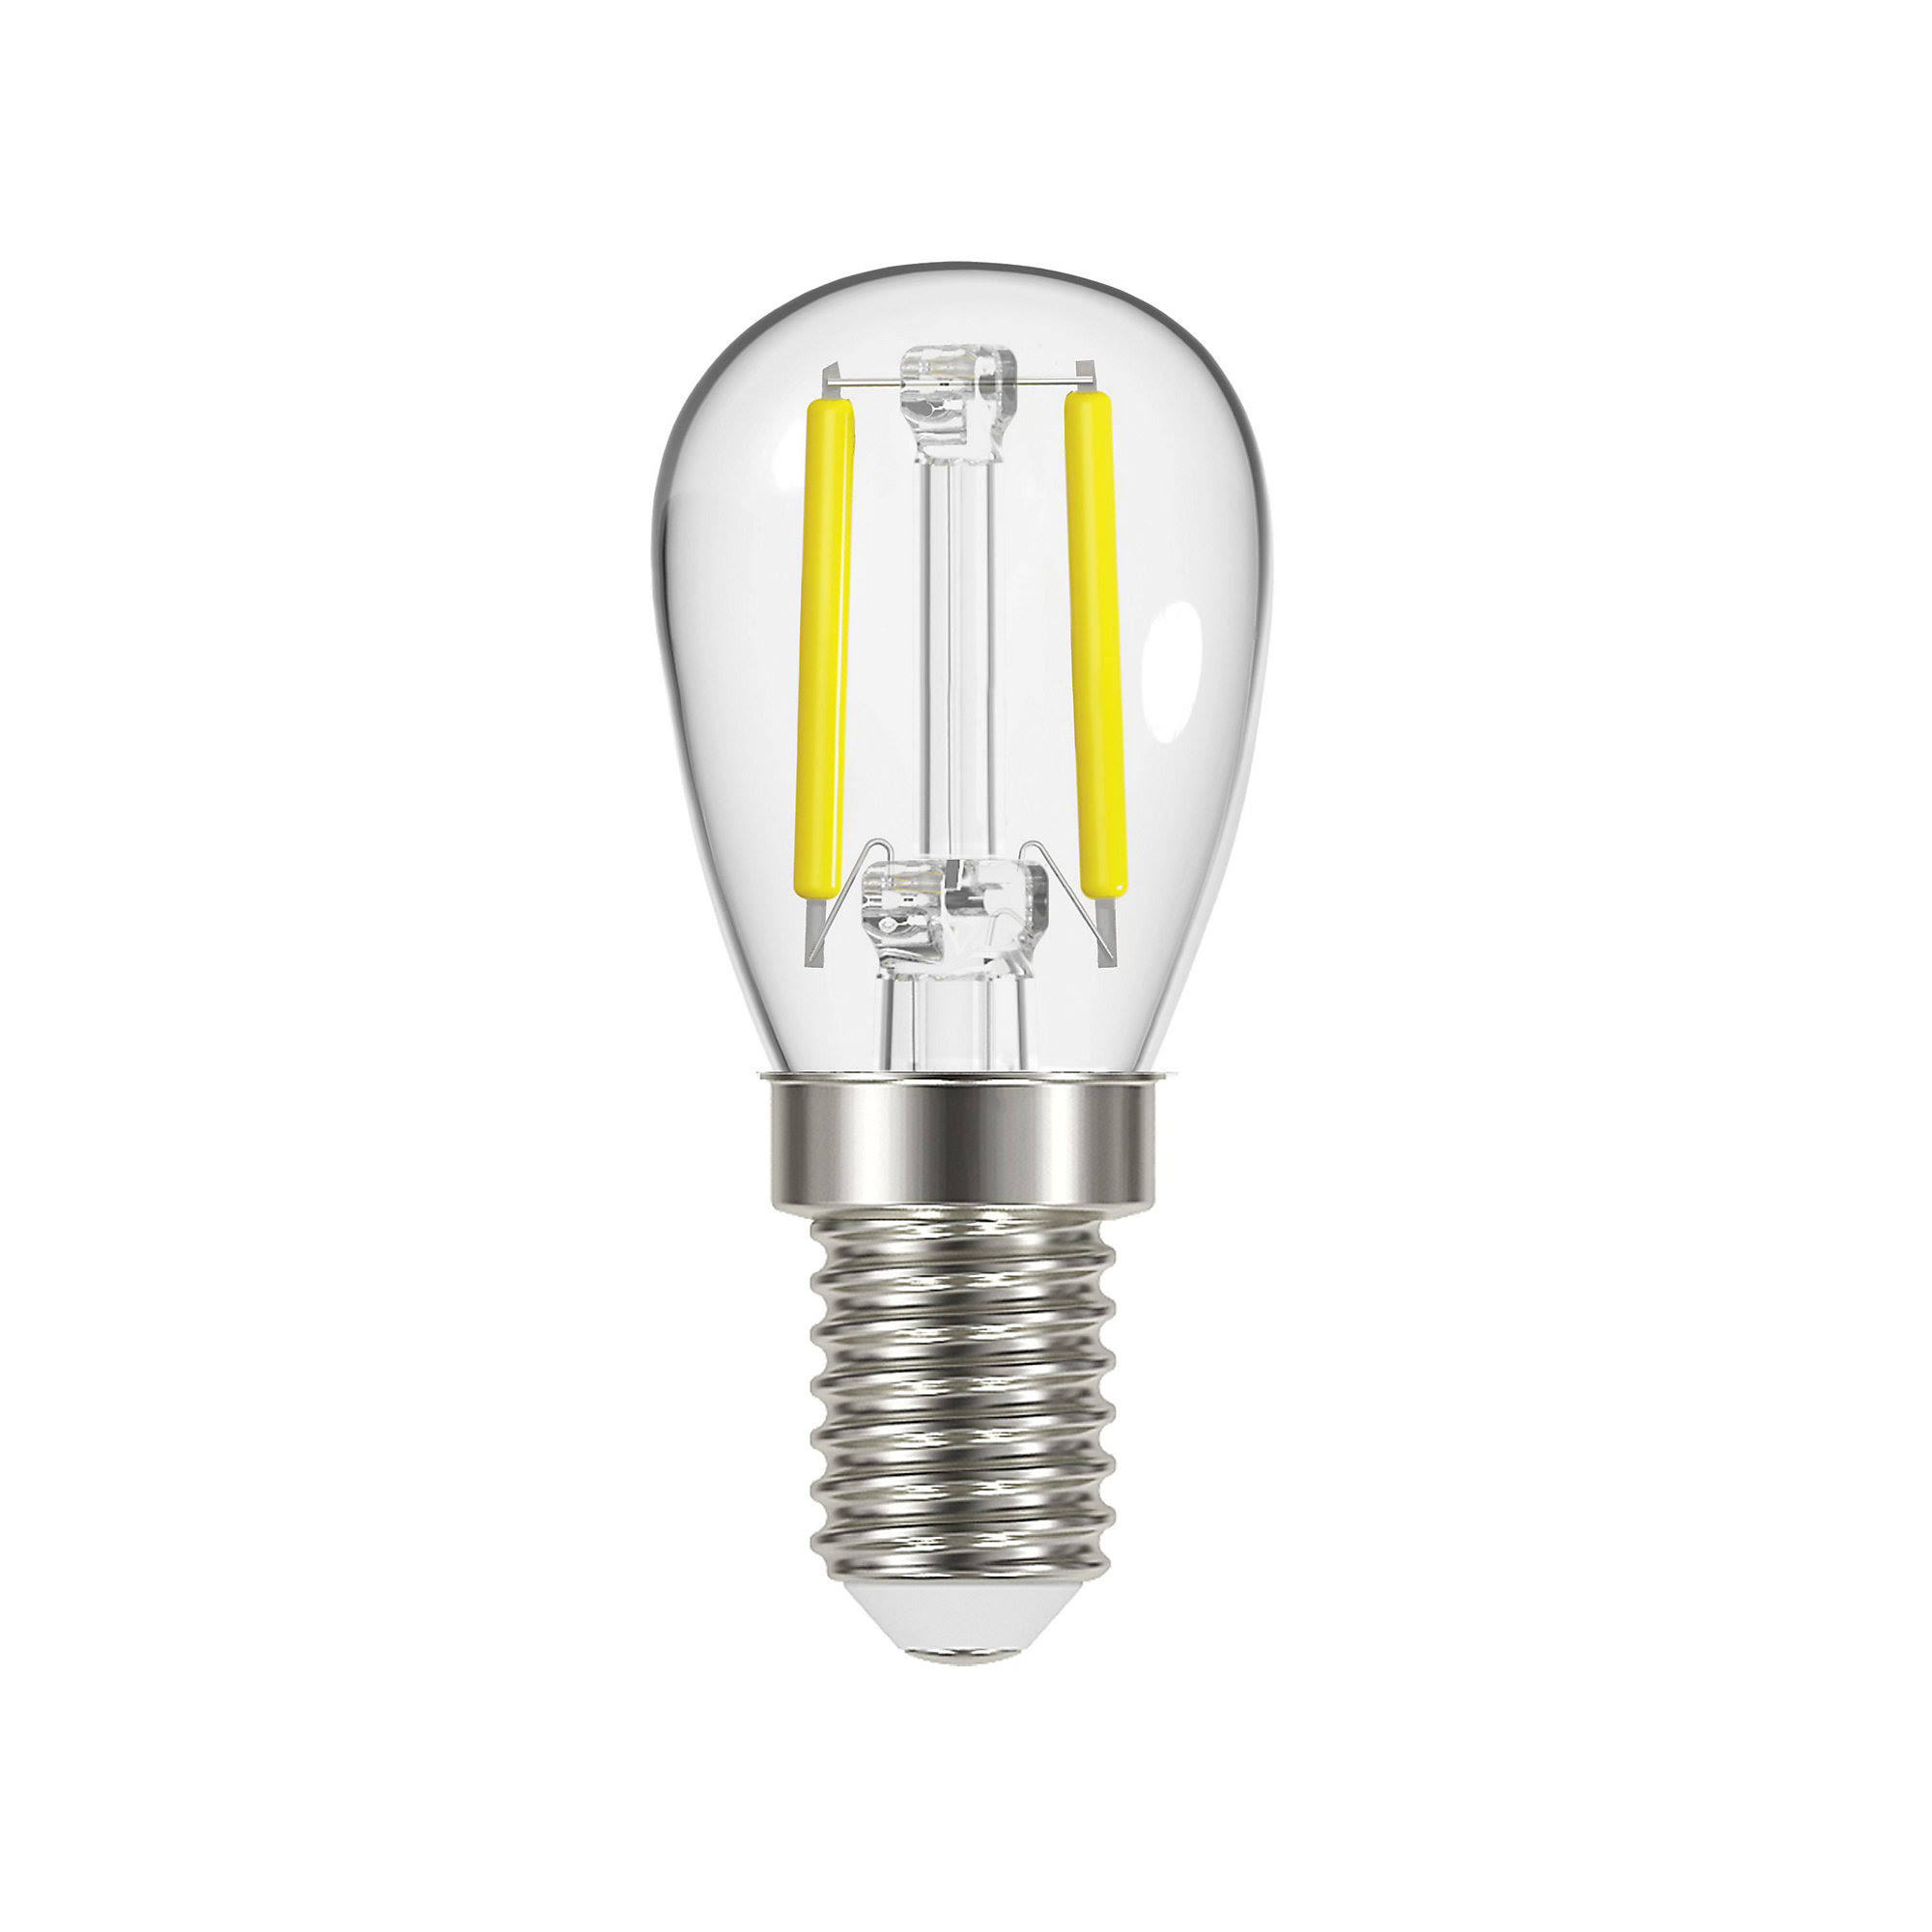 Energizer LED Reflector Light Bulbs ES E27 SES E14 Pearl Warm White 3 6 12 Bulbs